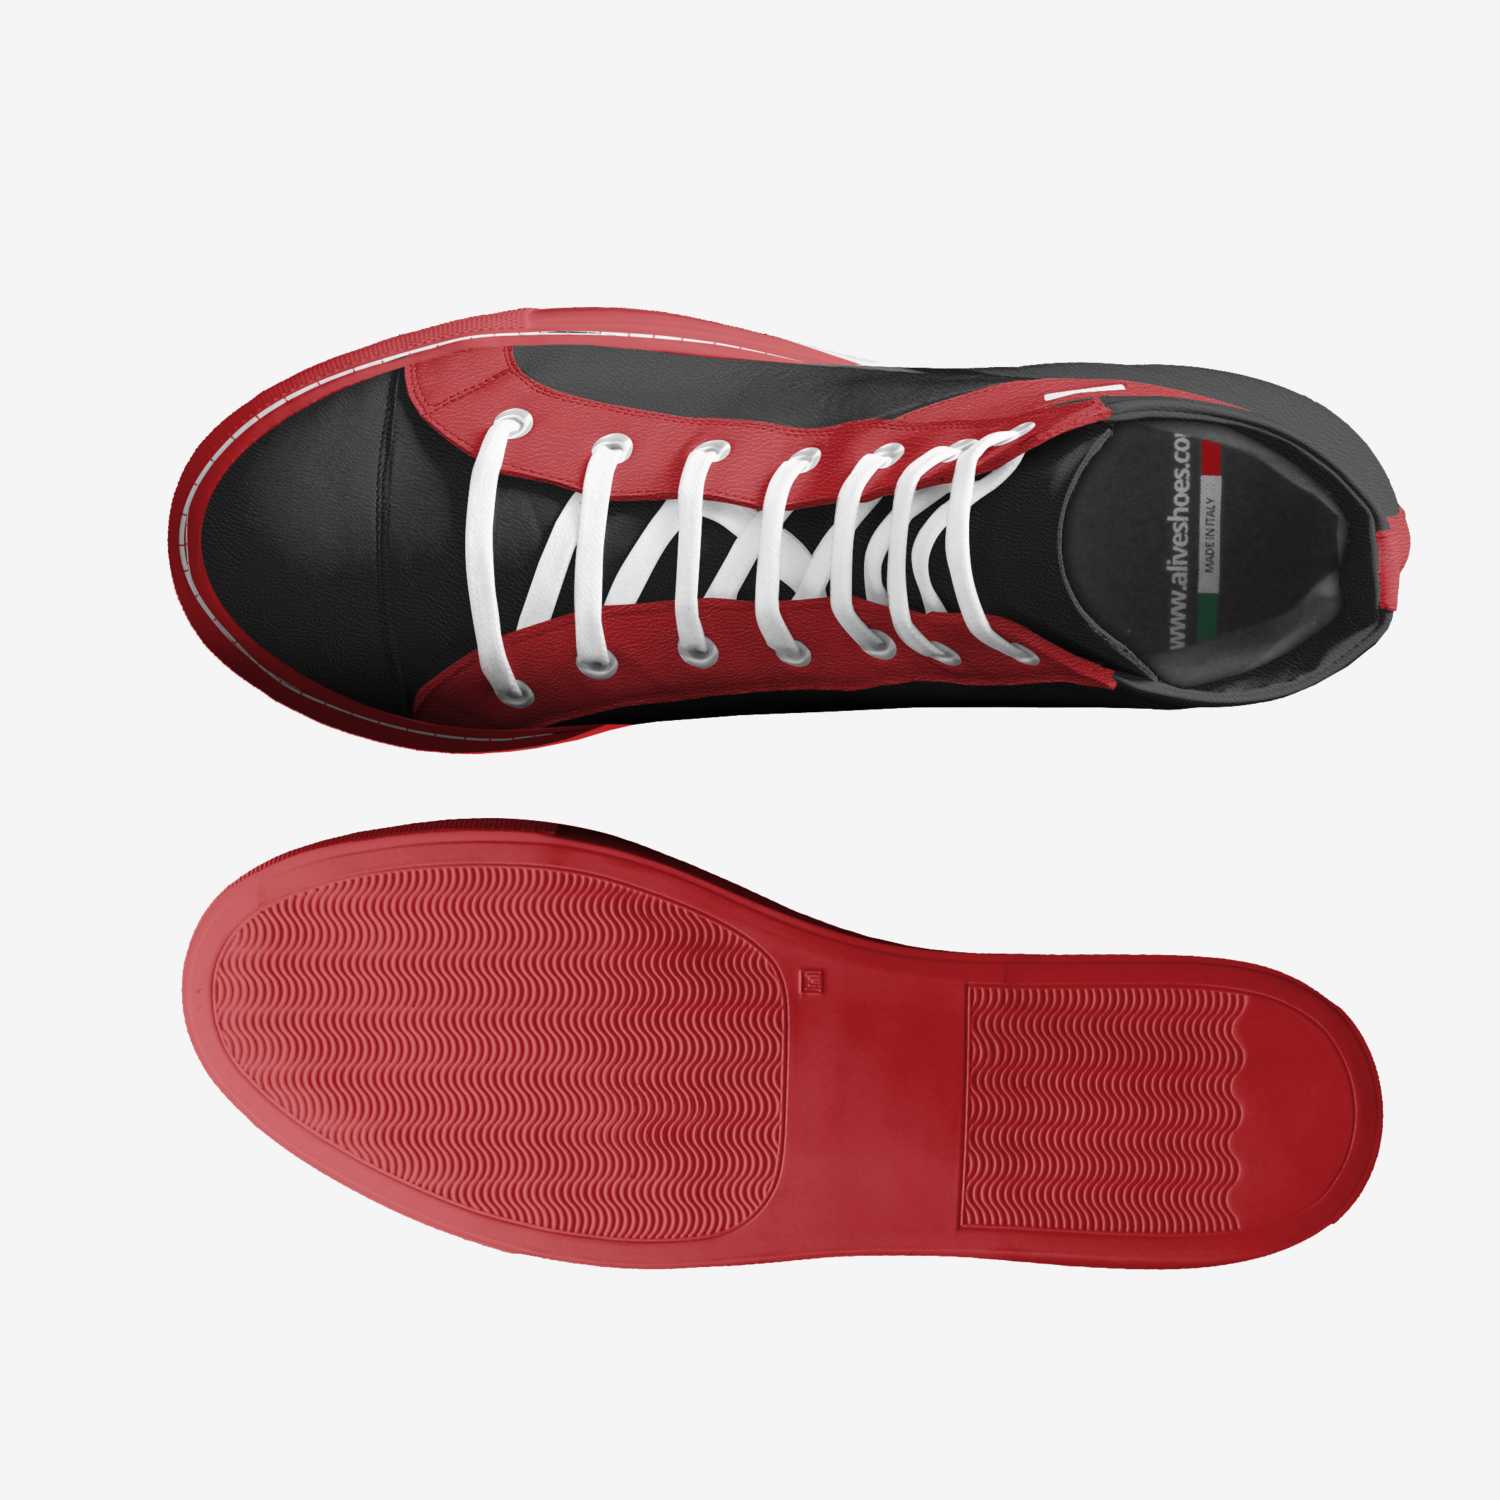 Red bottom heels SVG